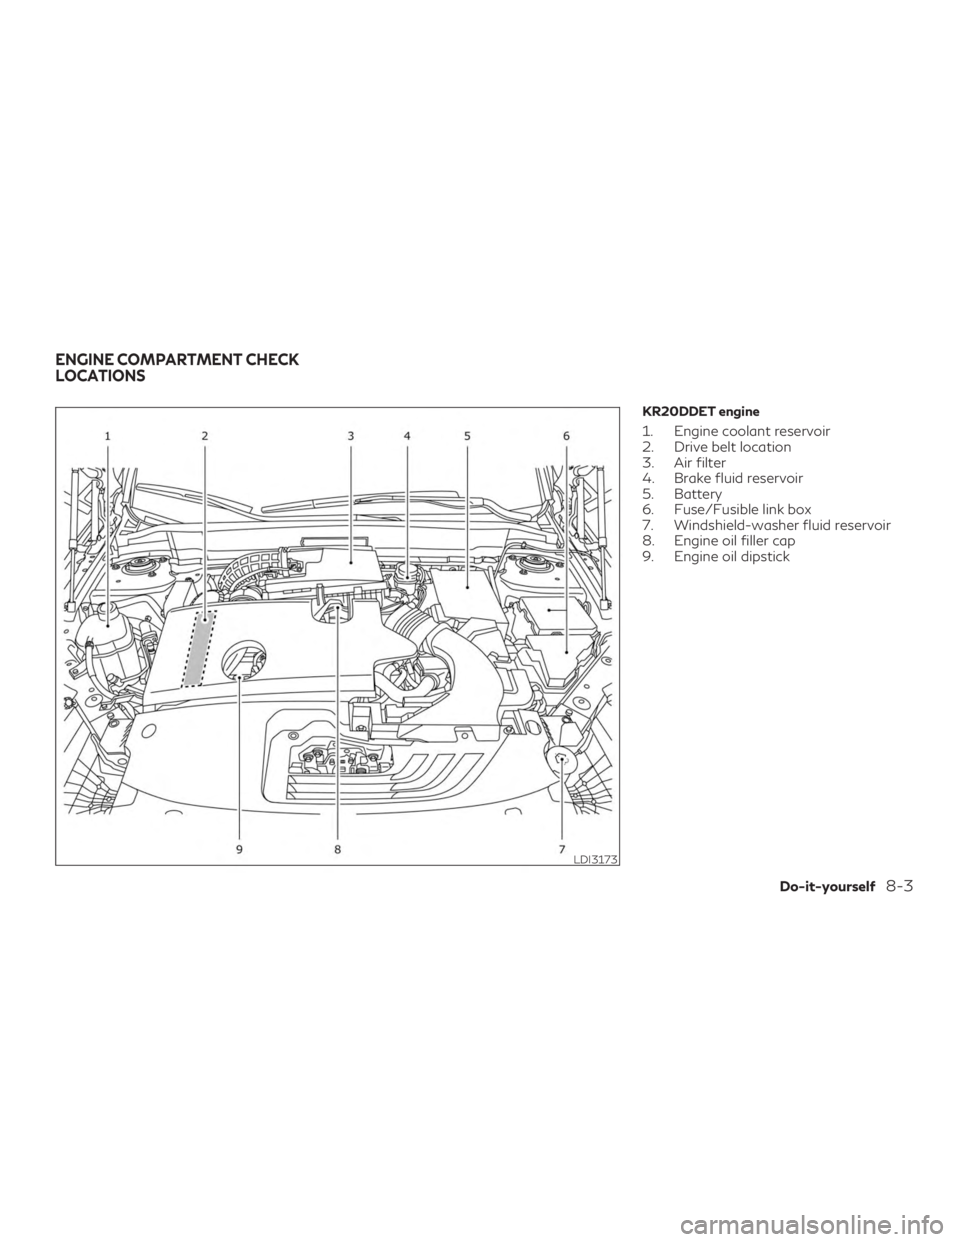 INFINITI QX50 2020  Owners Manual KR20DDET engine
1. Engine coolant reservoir
2. Drive belt location
3. Air filter
4. Brake fluid reservoir
5. Battery
6. Fuse/Fusible link box
7. Windshield-washer fluid reservoir
8. Engine oil filler 